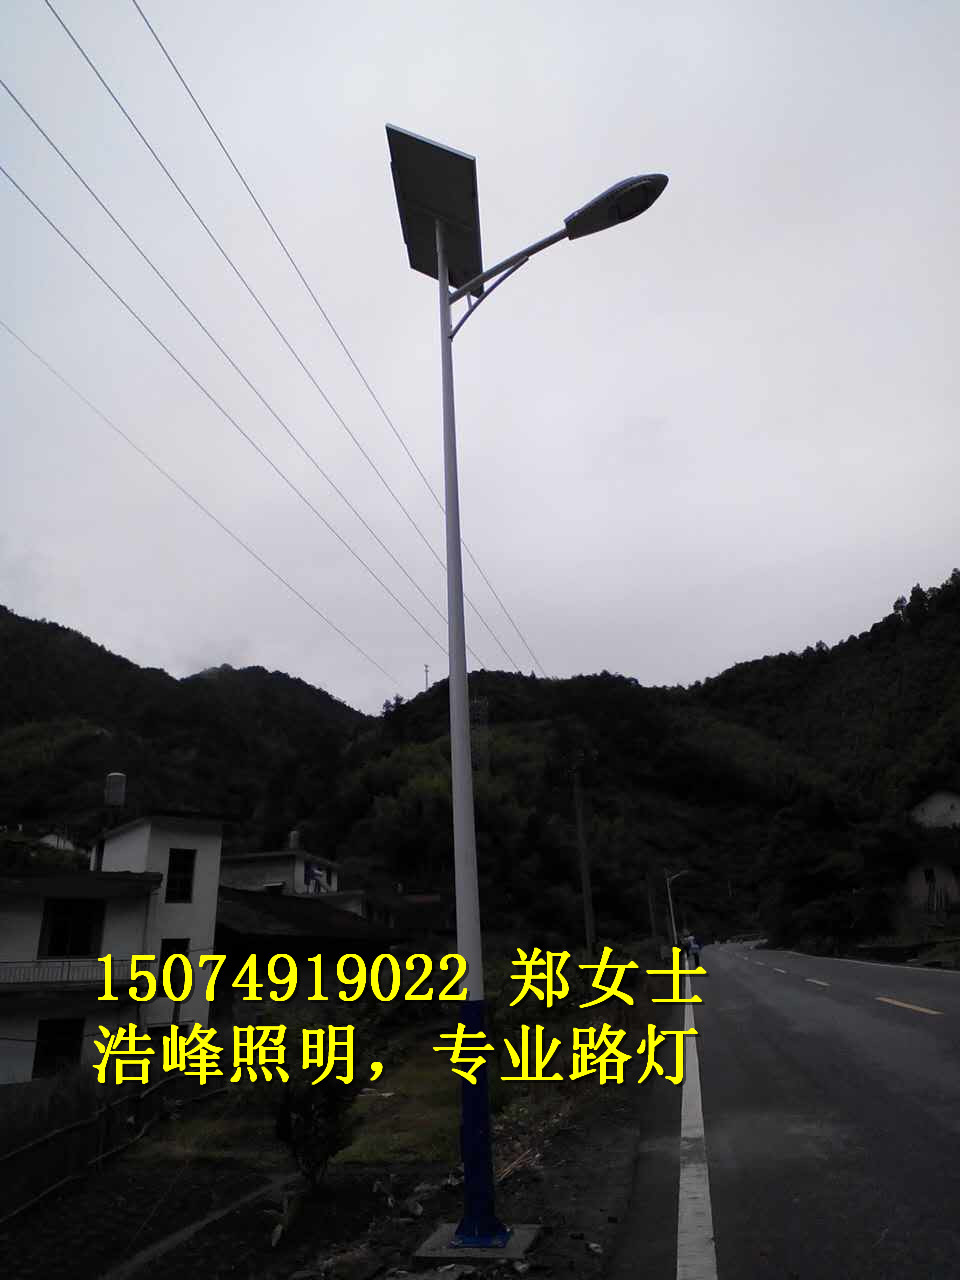 广西贺州影响太阳能led路灯价格的因素有哪些 贺州路灯厂 浩峰照明